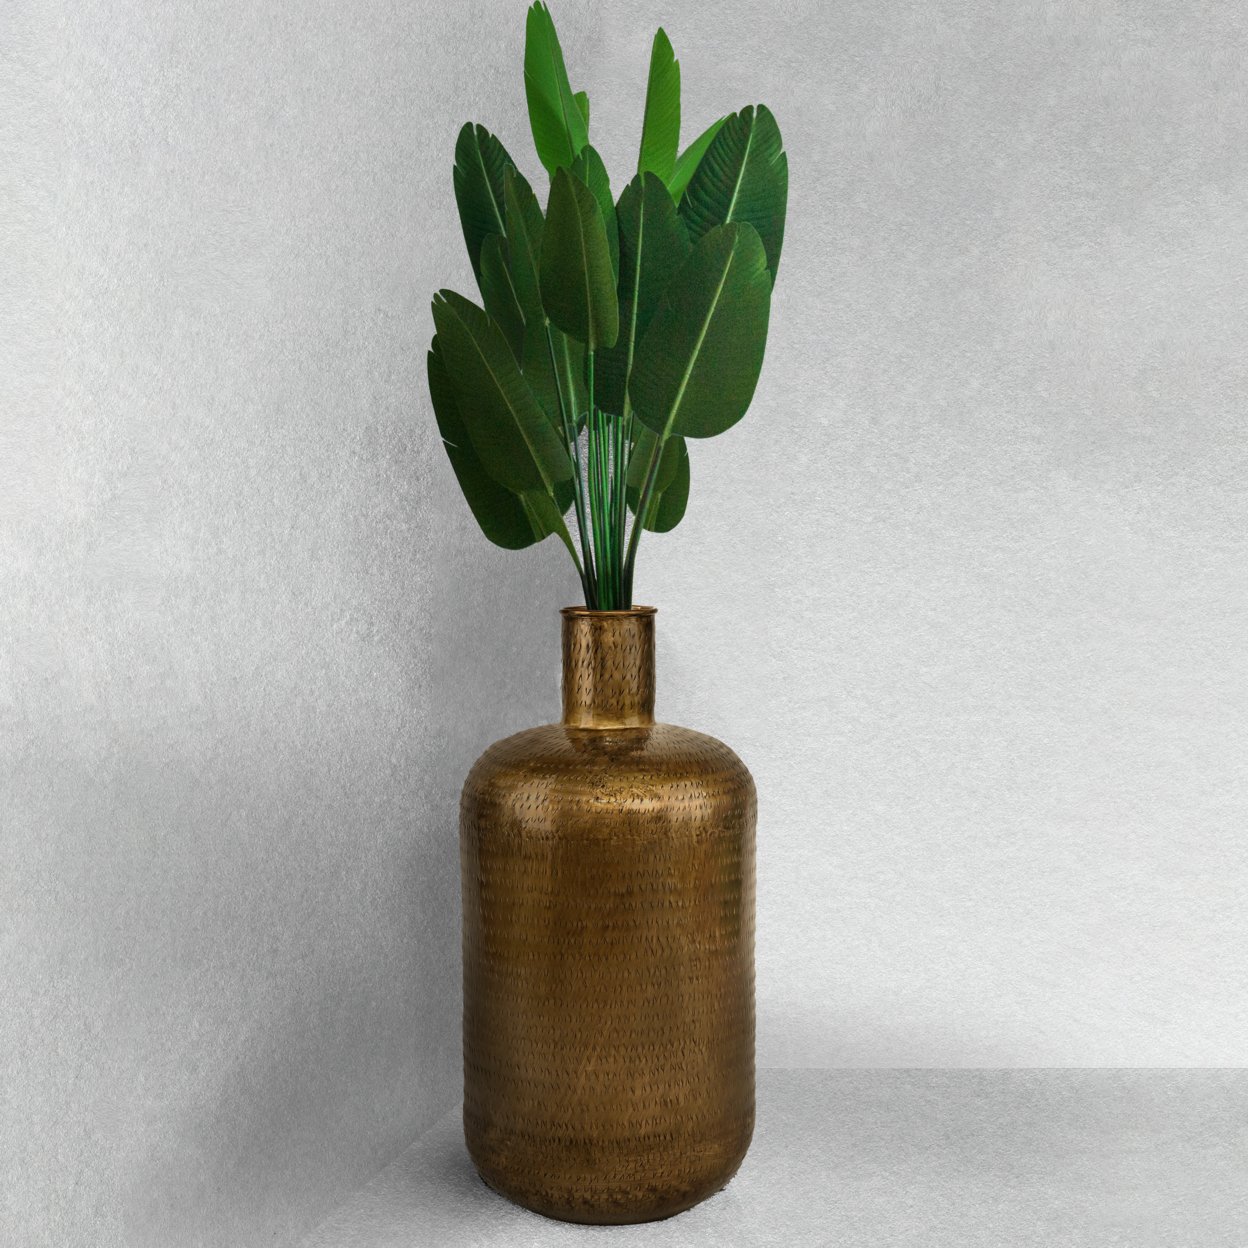 Antique Gold Metal Floor Flower Bottle Shape Vase For Entryway